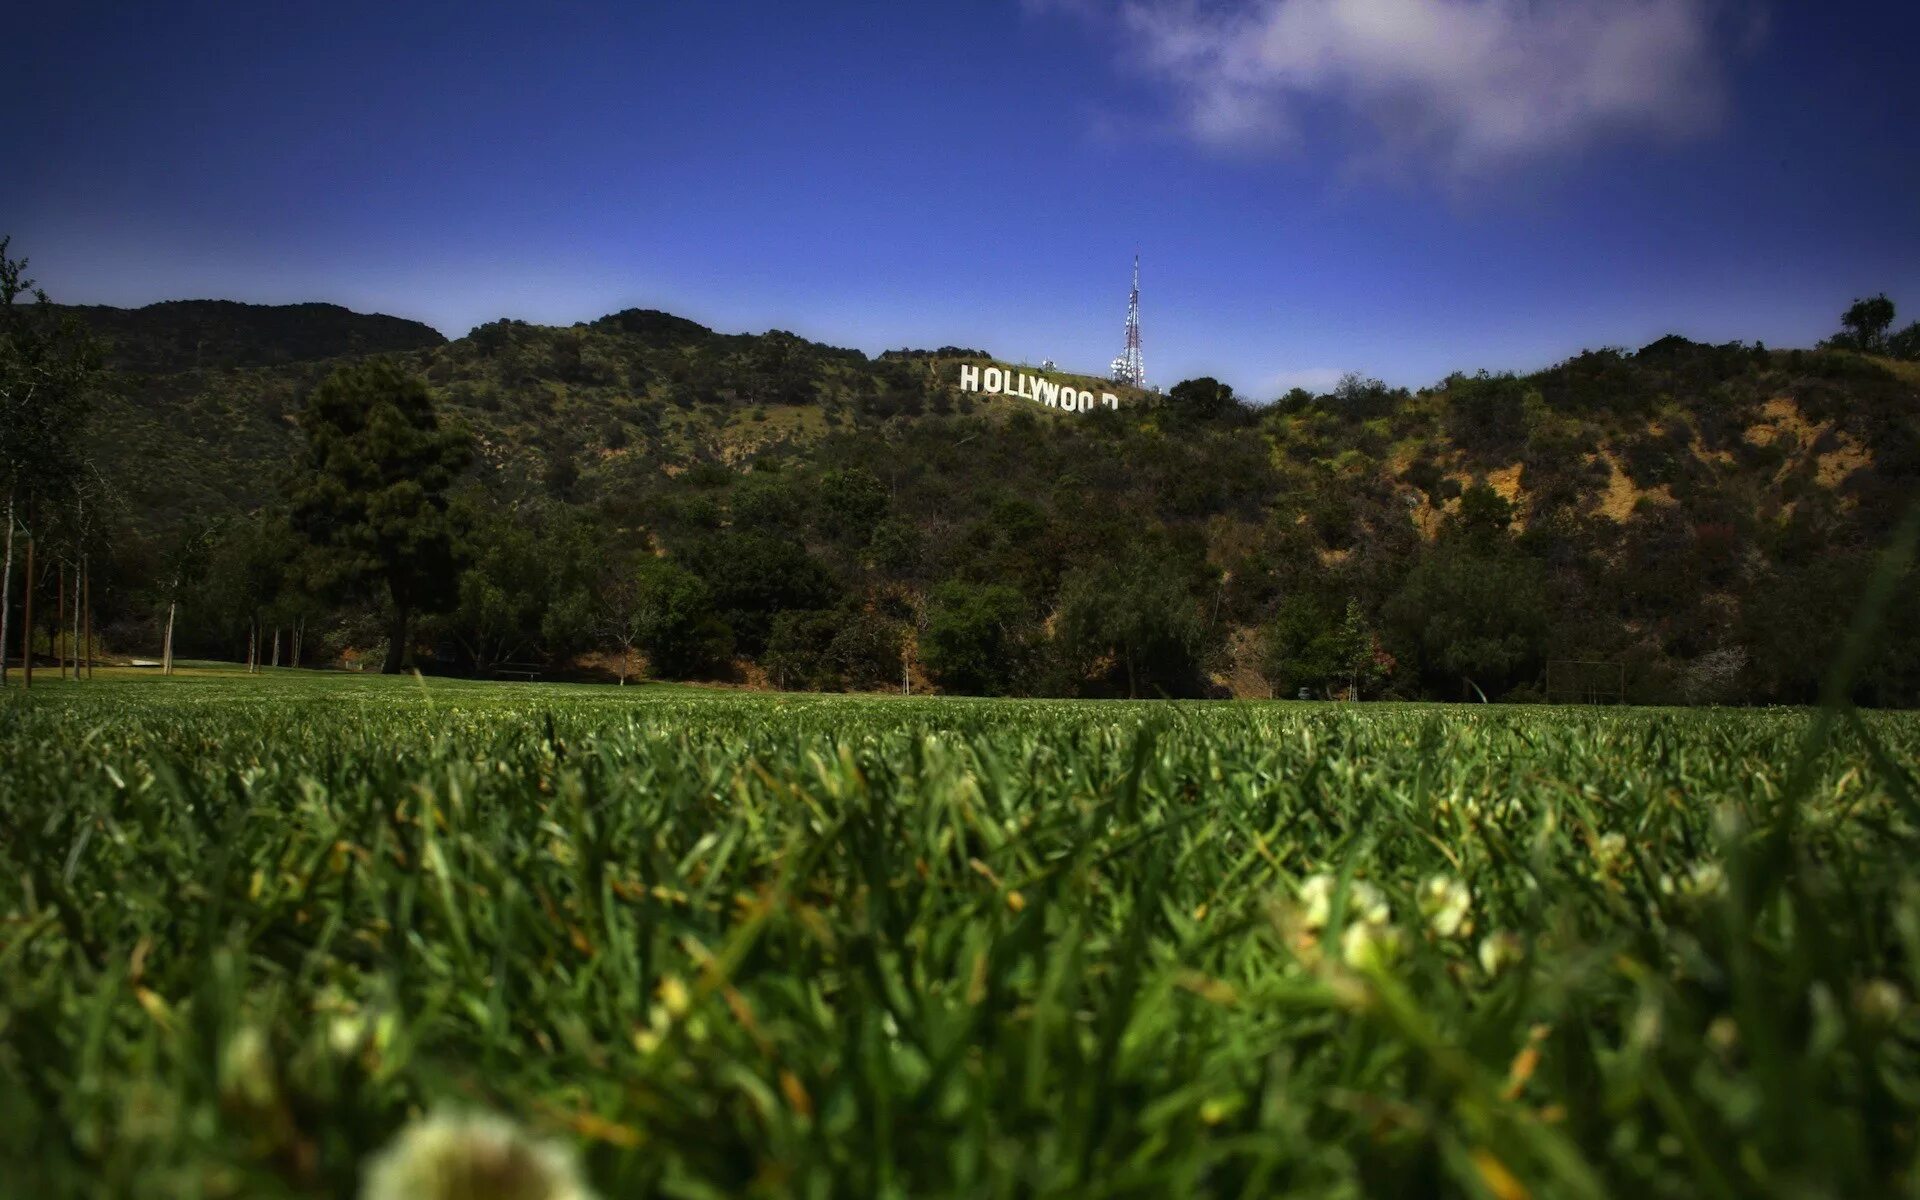 Обои на разрешение 1080 на 1080. Природа Лос Анджелеса. Зеленые холмы Лос Анджелес. Природа Голливуда. Панорама плантации.